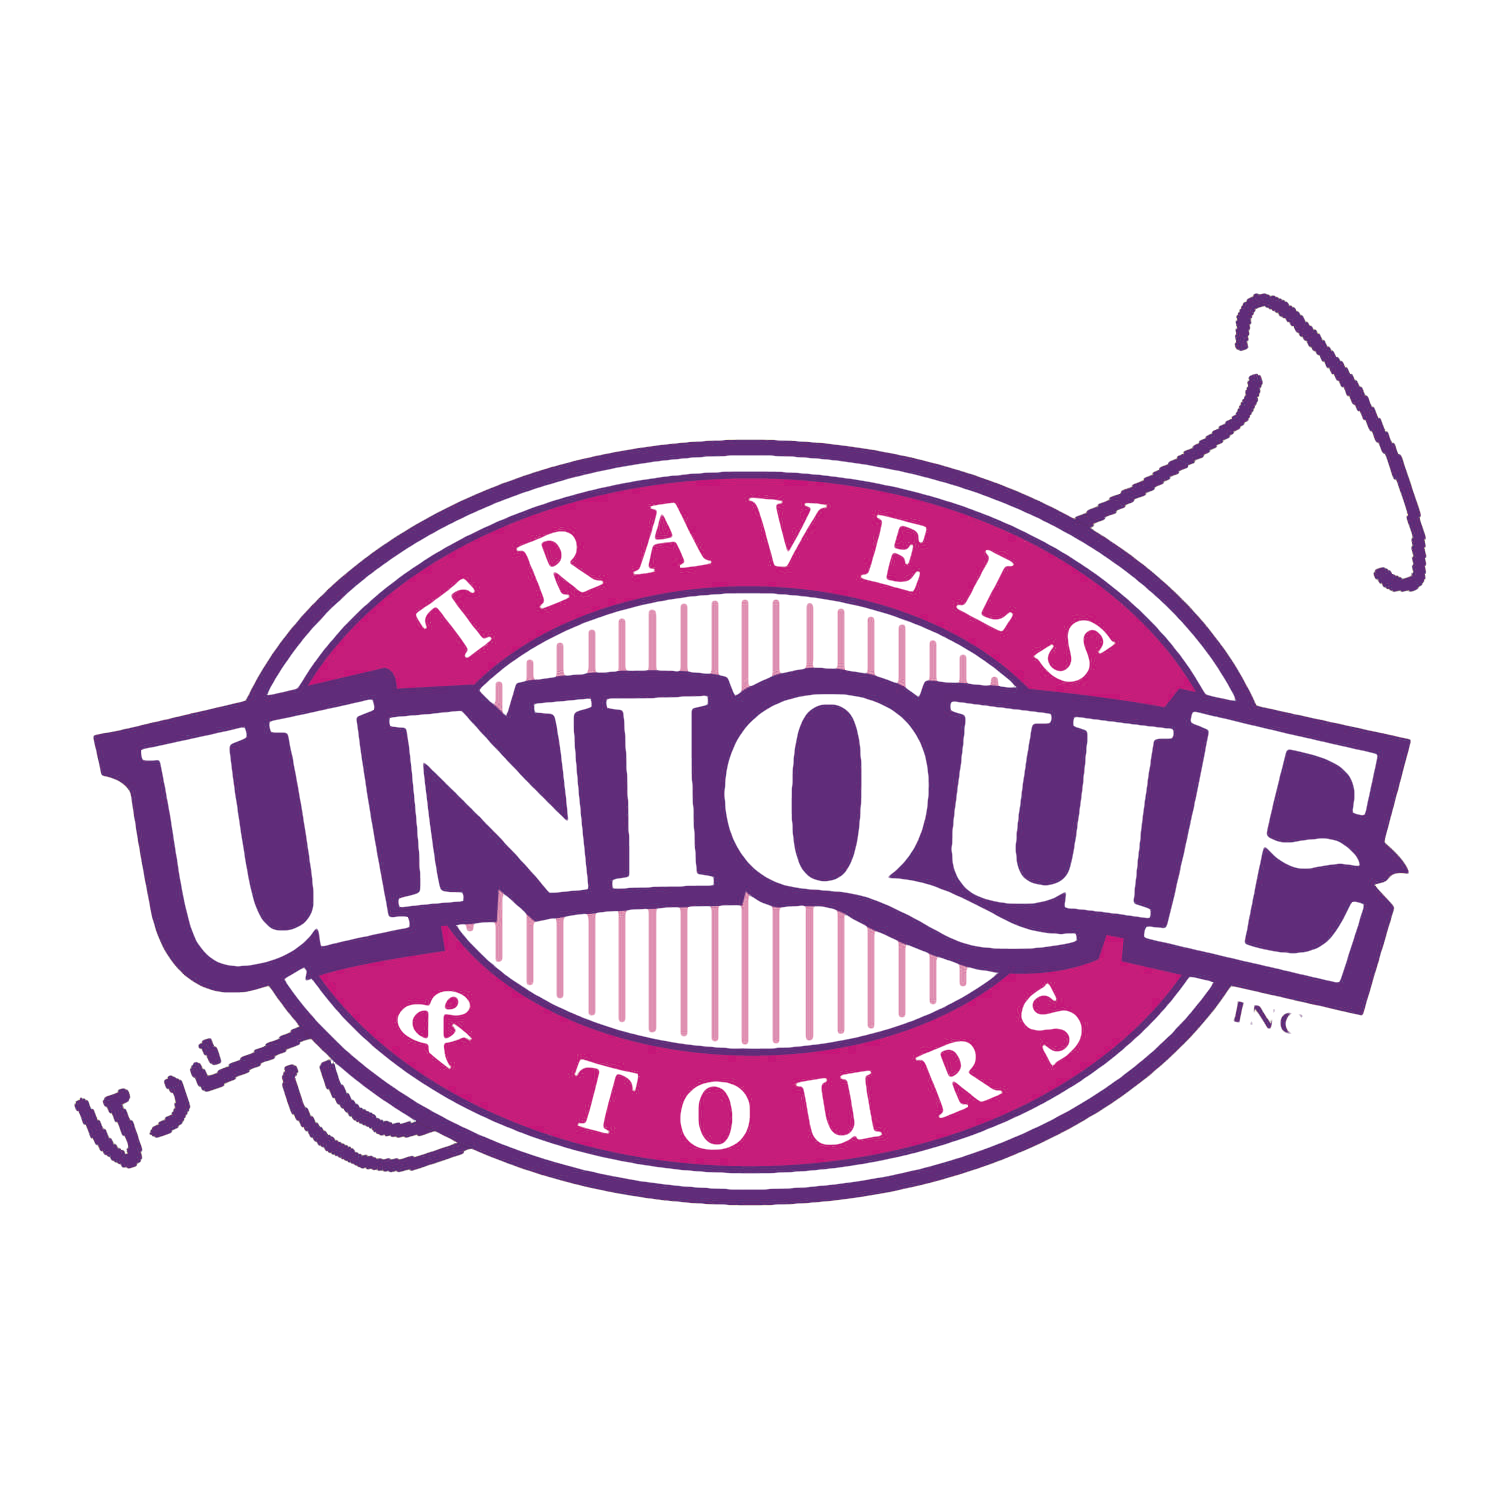 Unique Travels & Tours, Inc. Logo